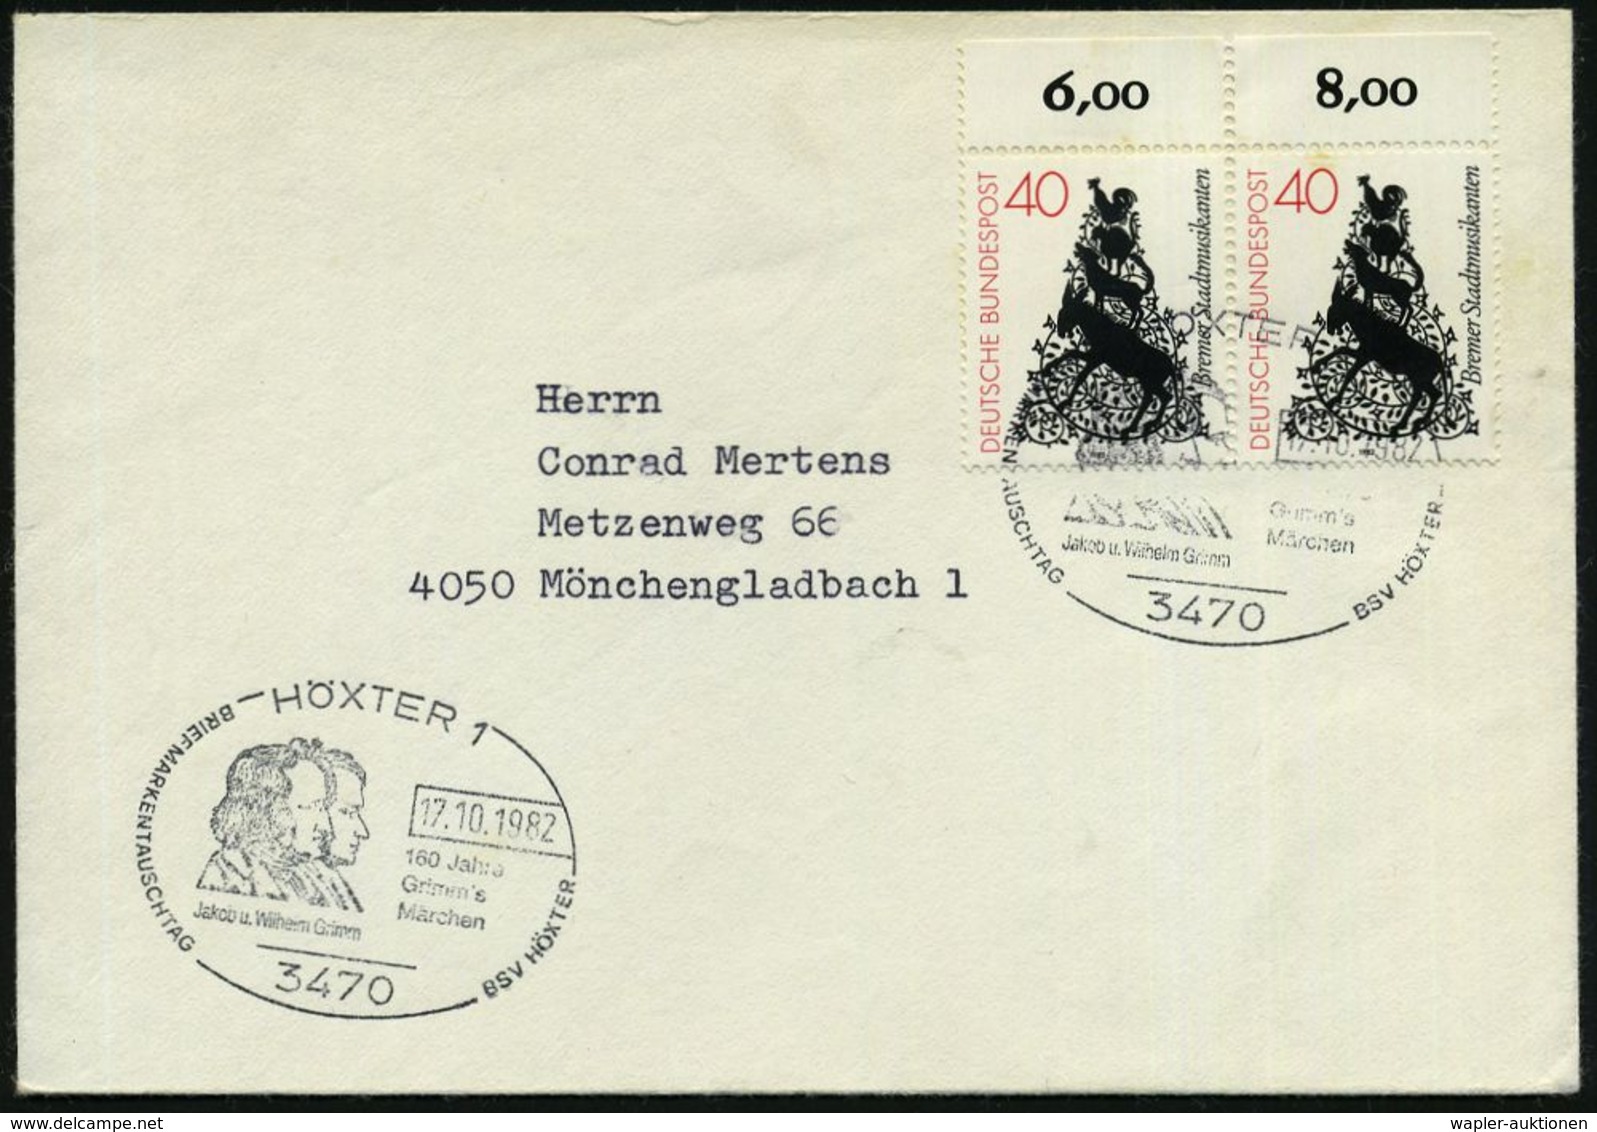 3470 HÖXTER 1/ 160 Jahre/ Grimm's/ Märchen.. 1982 (17.10.) SSt = Gebr. Grimm Auf Rand-Paar 40 Pf. Märchen "Bremer Stadtm - Ecrivains